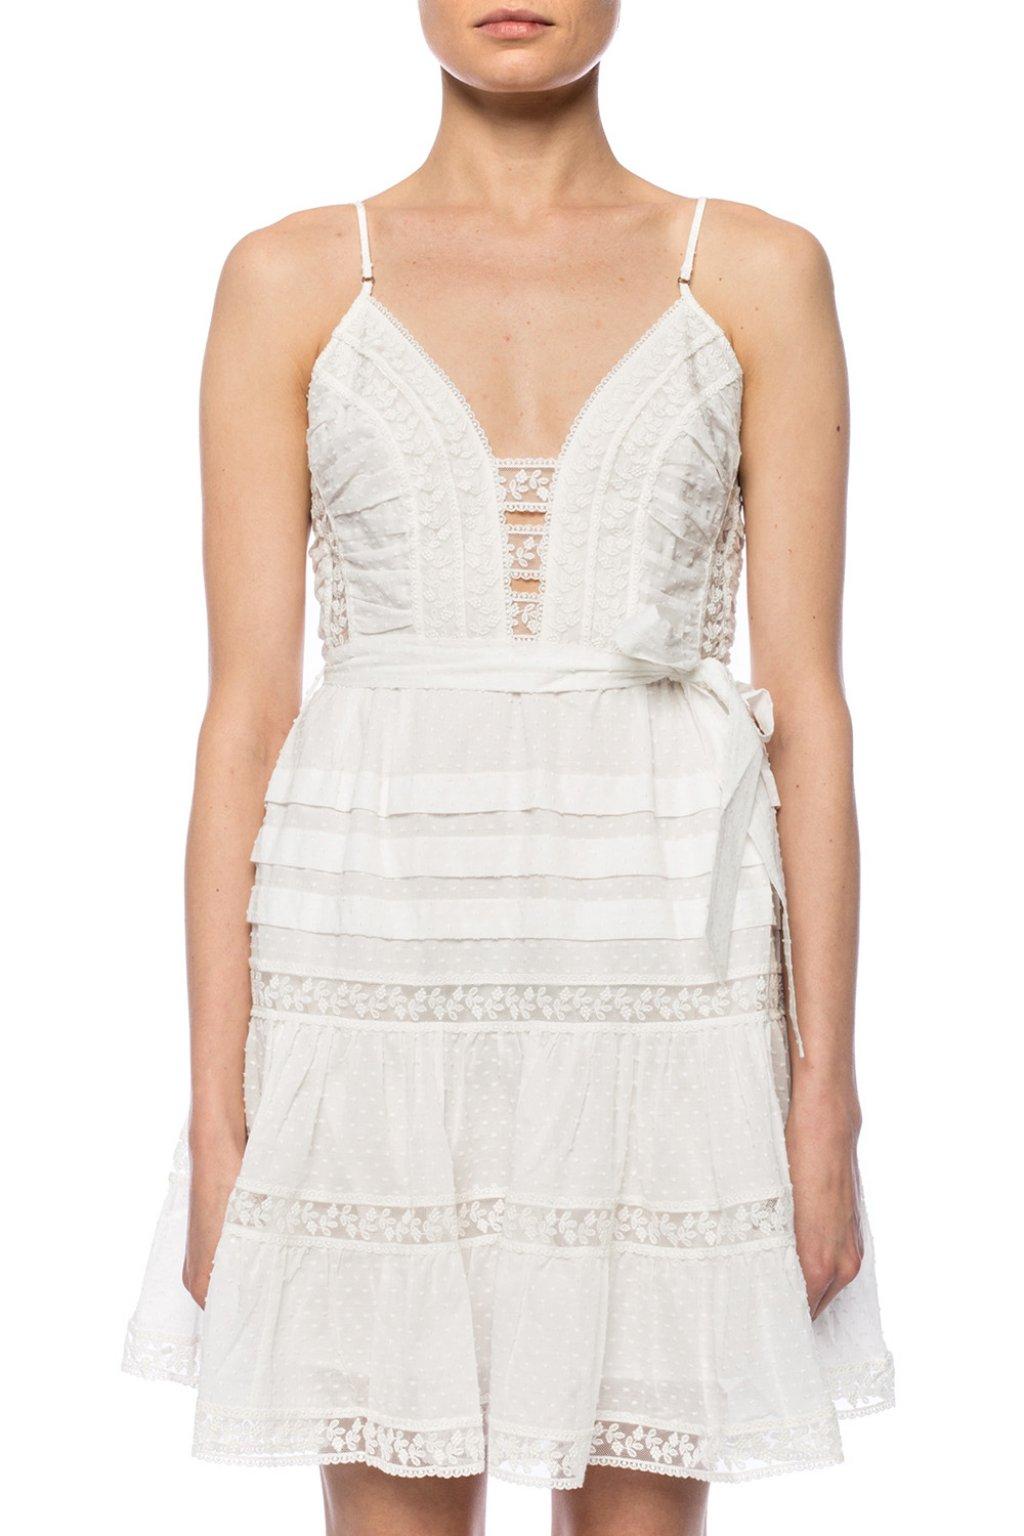 Zimmermann Lace Slip Dress in White - Lyst